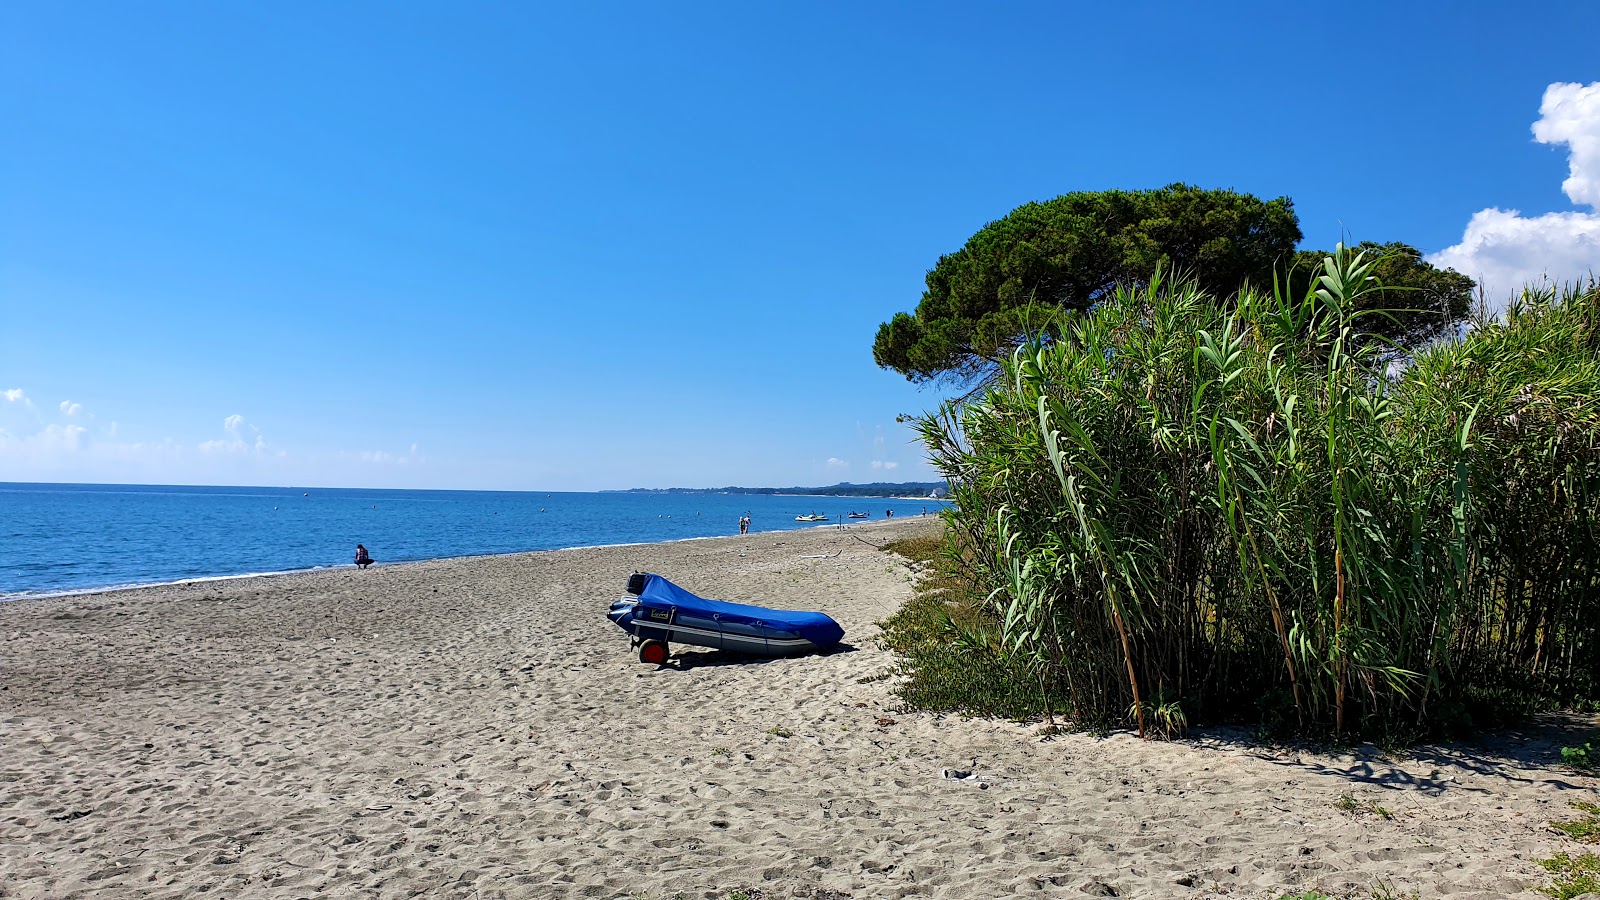 Zdjęcie Ponticchio beach - popularne miejsce wśród znawców relaksu